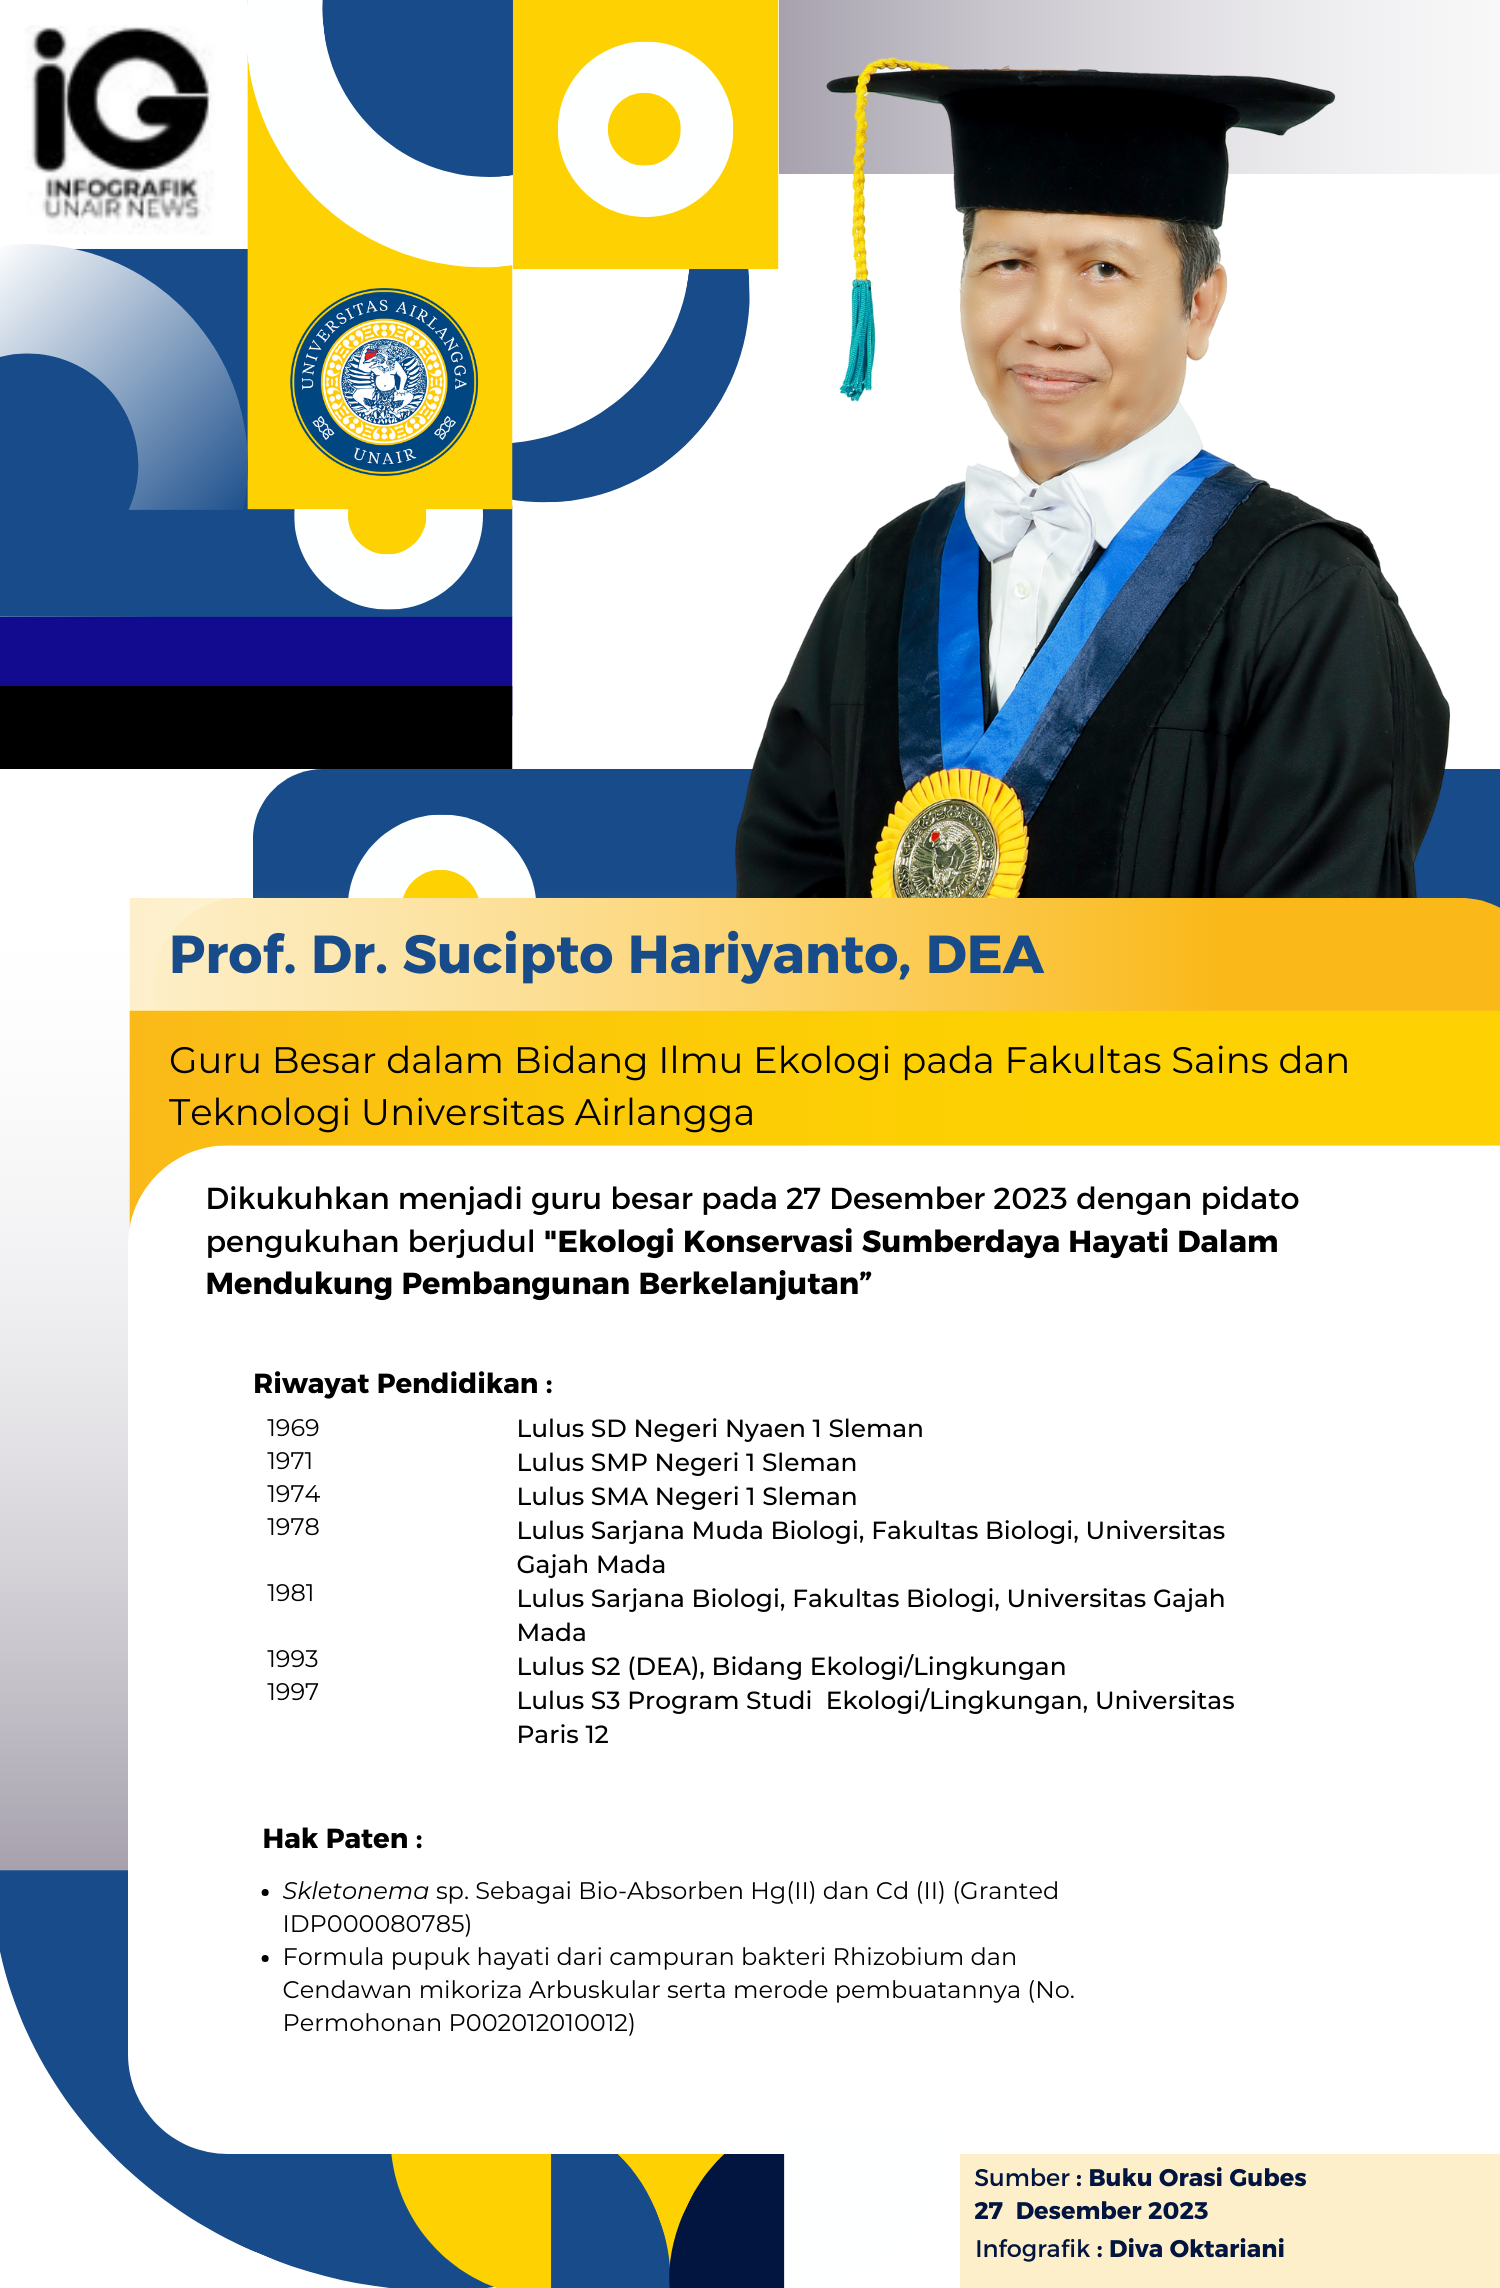 UNAIR NEWS – Pengukuhan guru besar Prof. Dr. Sucipto Hariyanto, DEA pada 27 Desember 2023. Beliau menyampaikan pidato pengukuhan yang berjudul “Ekologi Konservasi Sumberdaya Hayati Dalam Mendukung Pembangunan Berkelanjutan”.